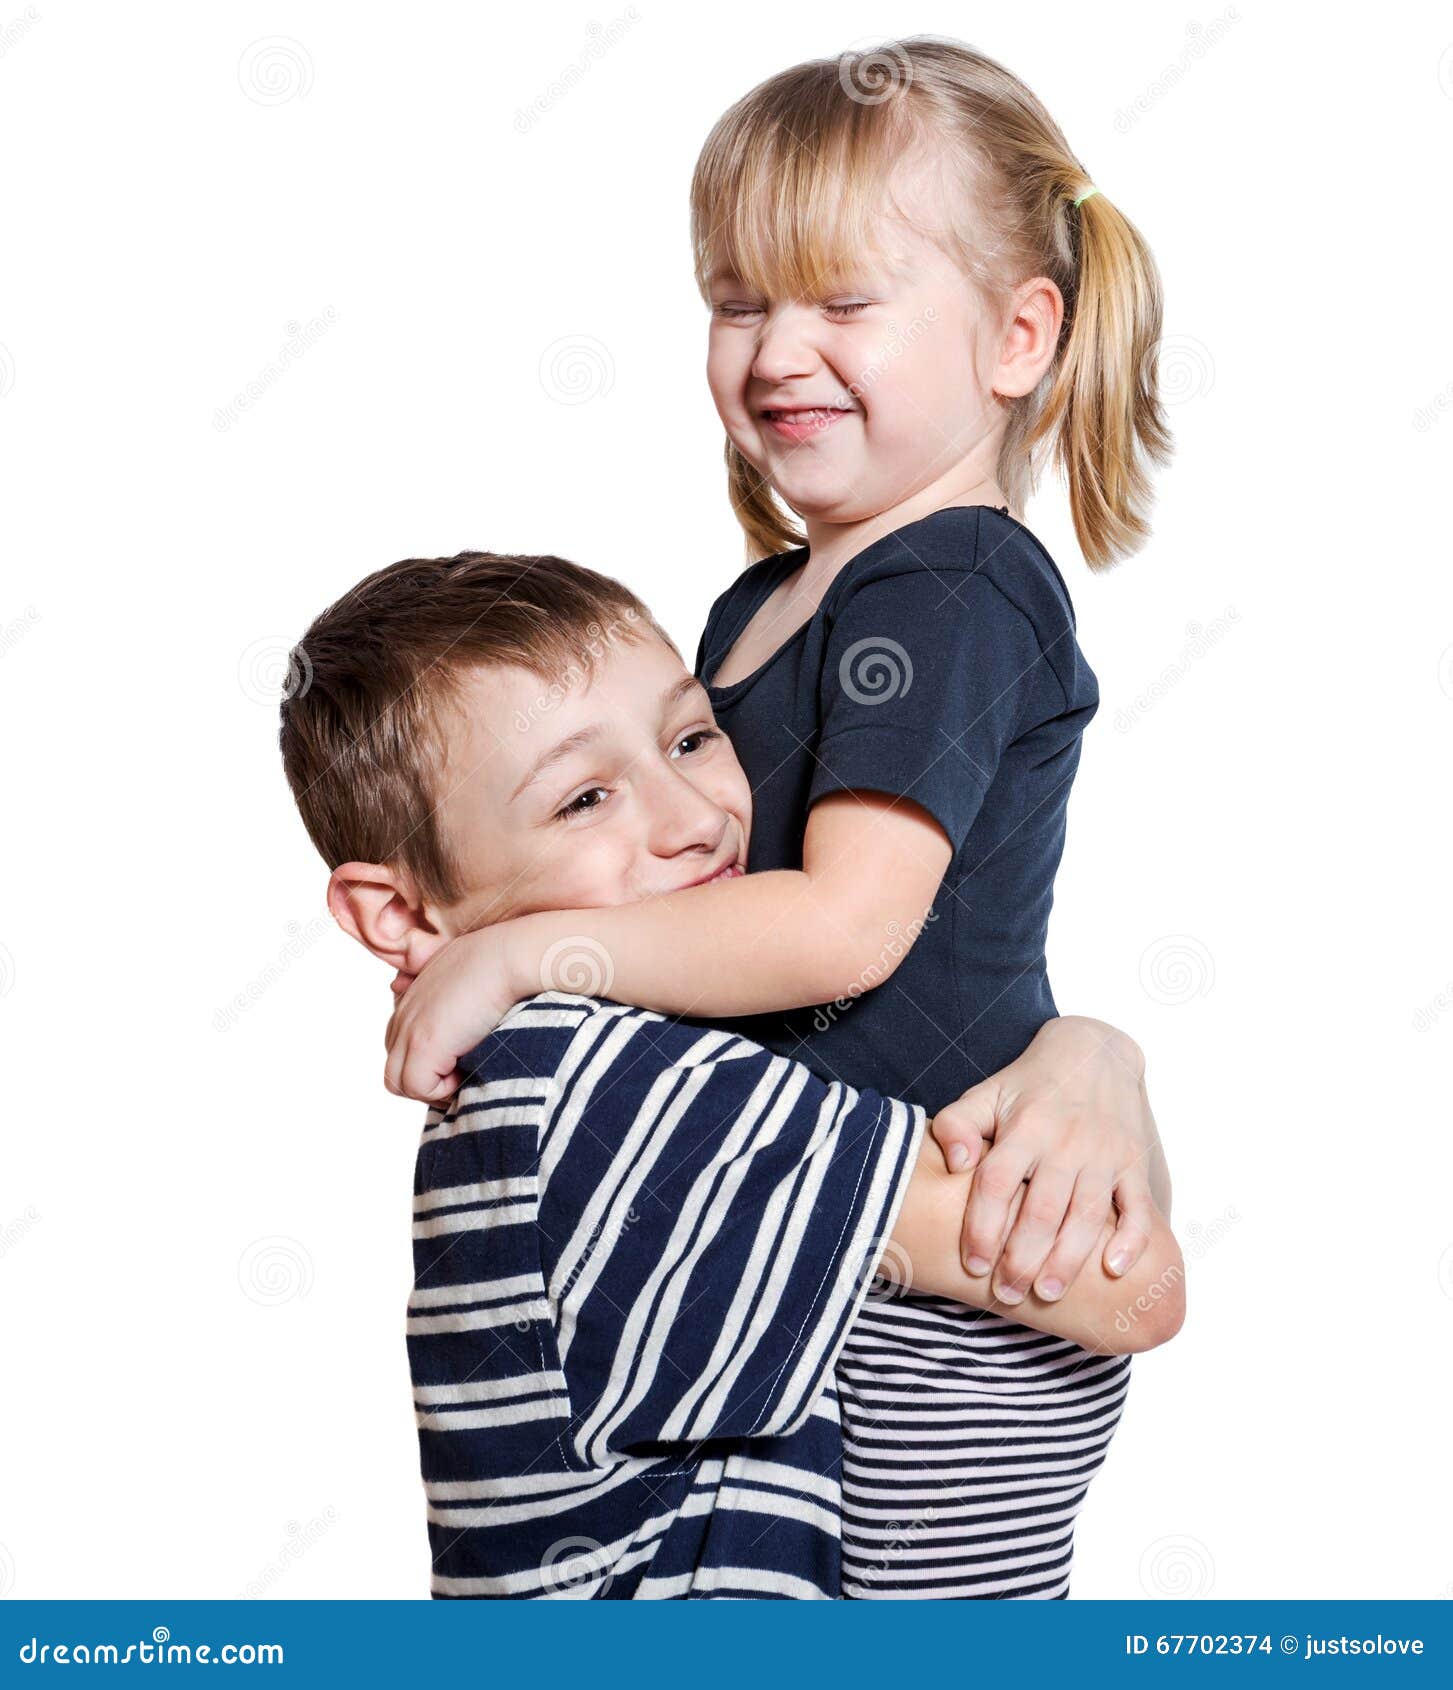 Сестра обожает брата. Старший брат обнимает сестру. Объятия брата и сестры. Сестра обнимает брата. Дети обнимаются на белом фоне.